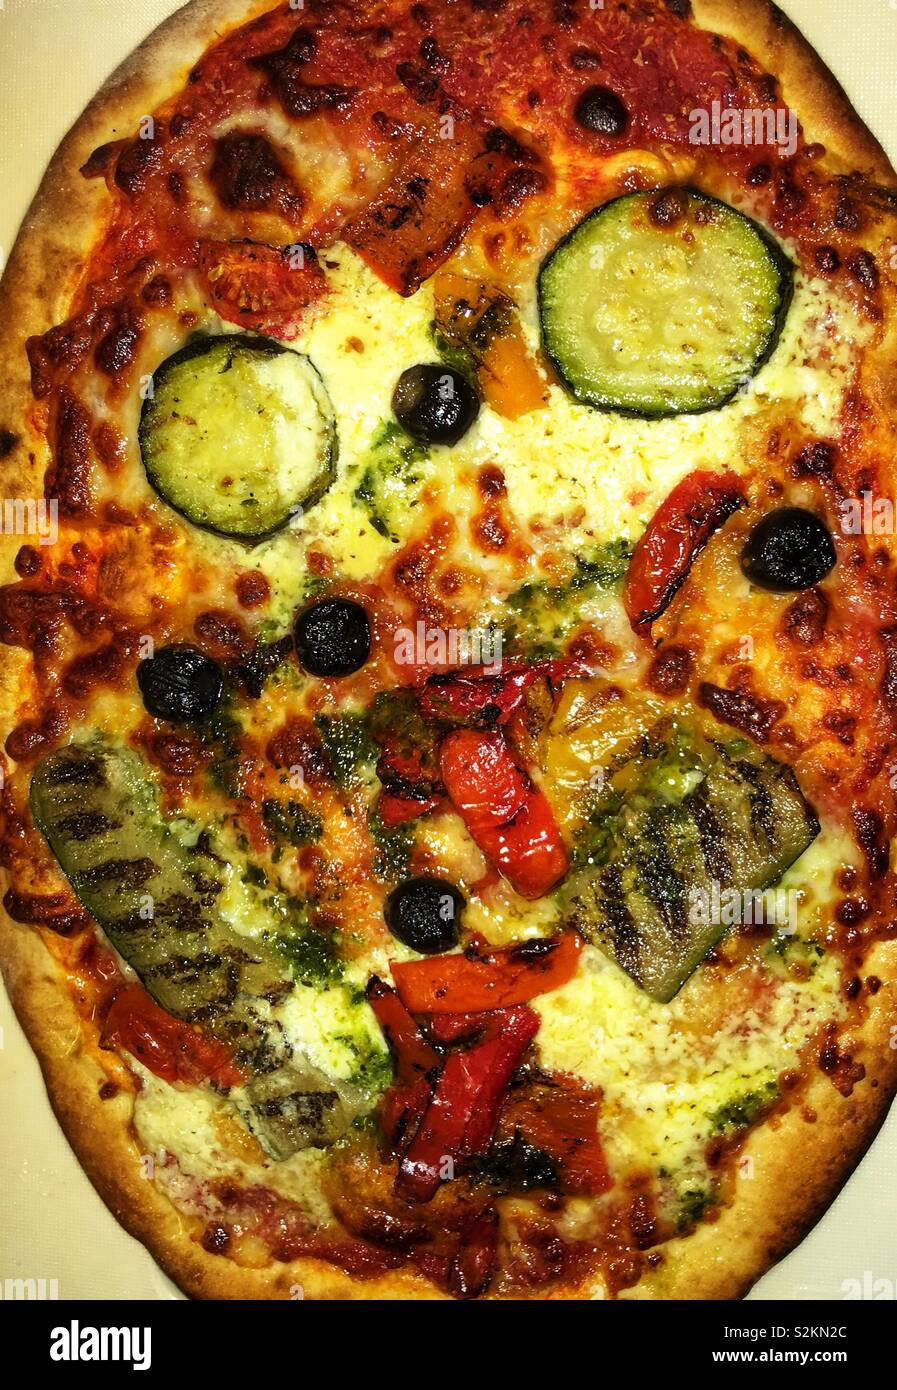 Pizza sonriente. Imagen que representa una comida recién cocinado pizza mostrando una similitud con una cara sonriente. Foto de stock